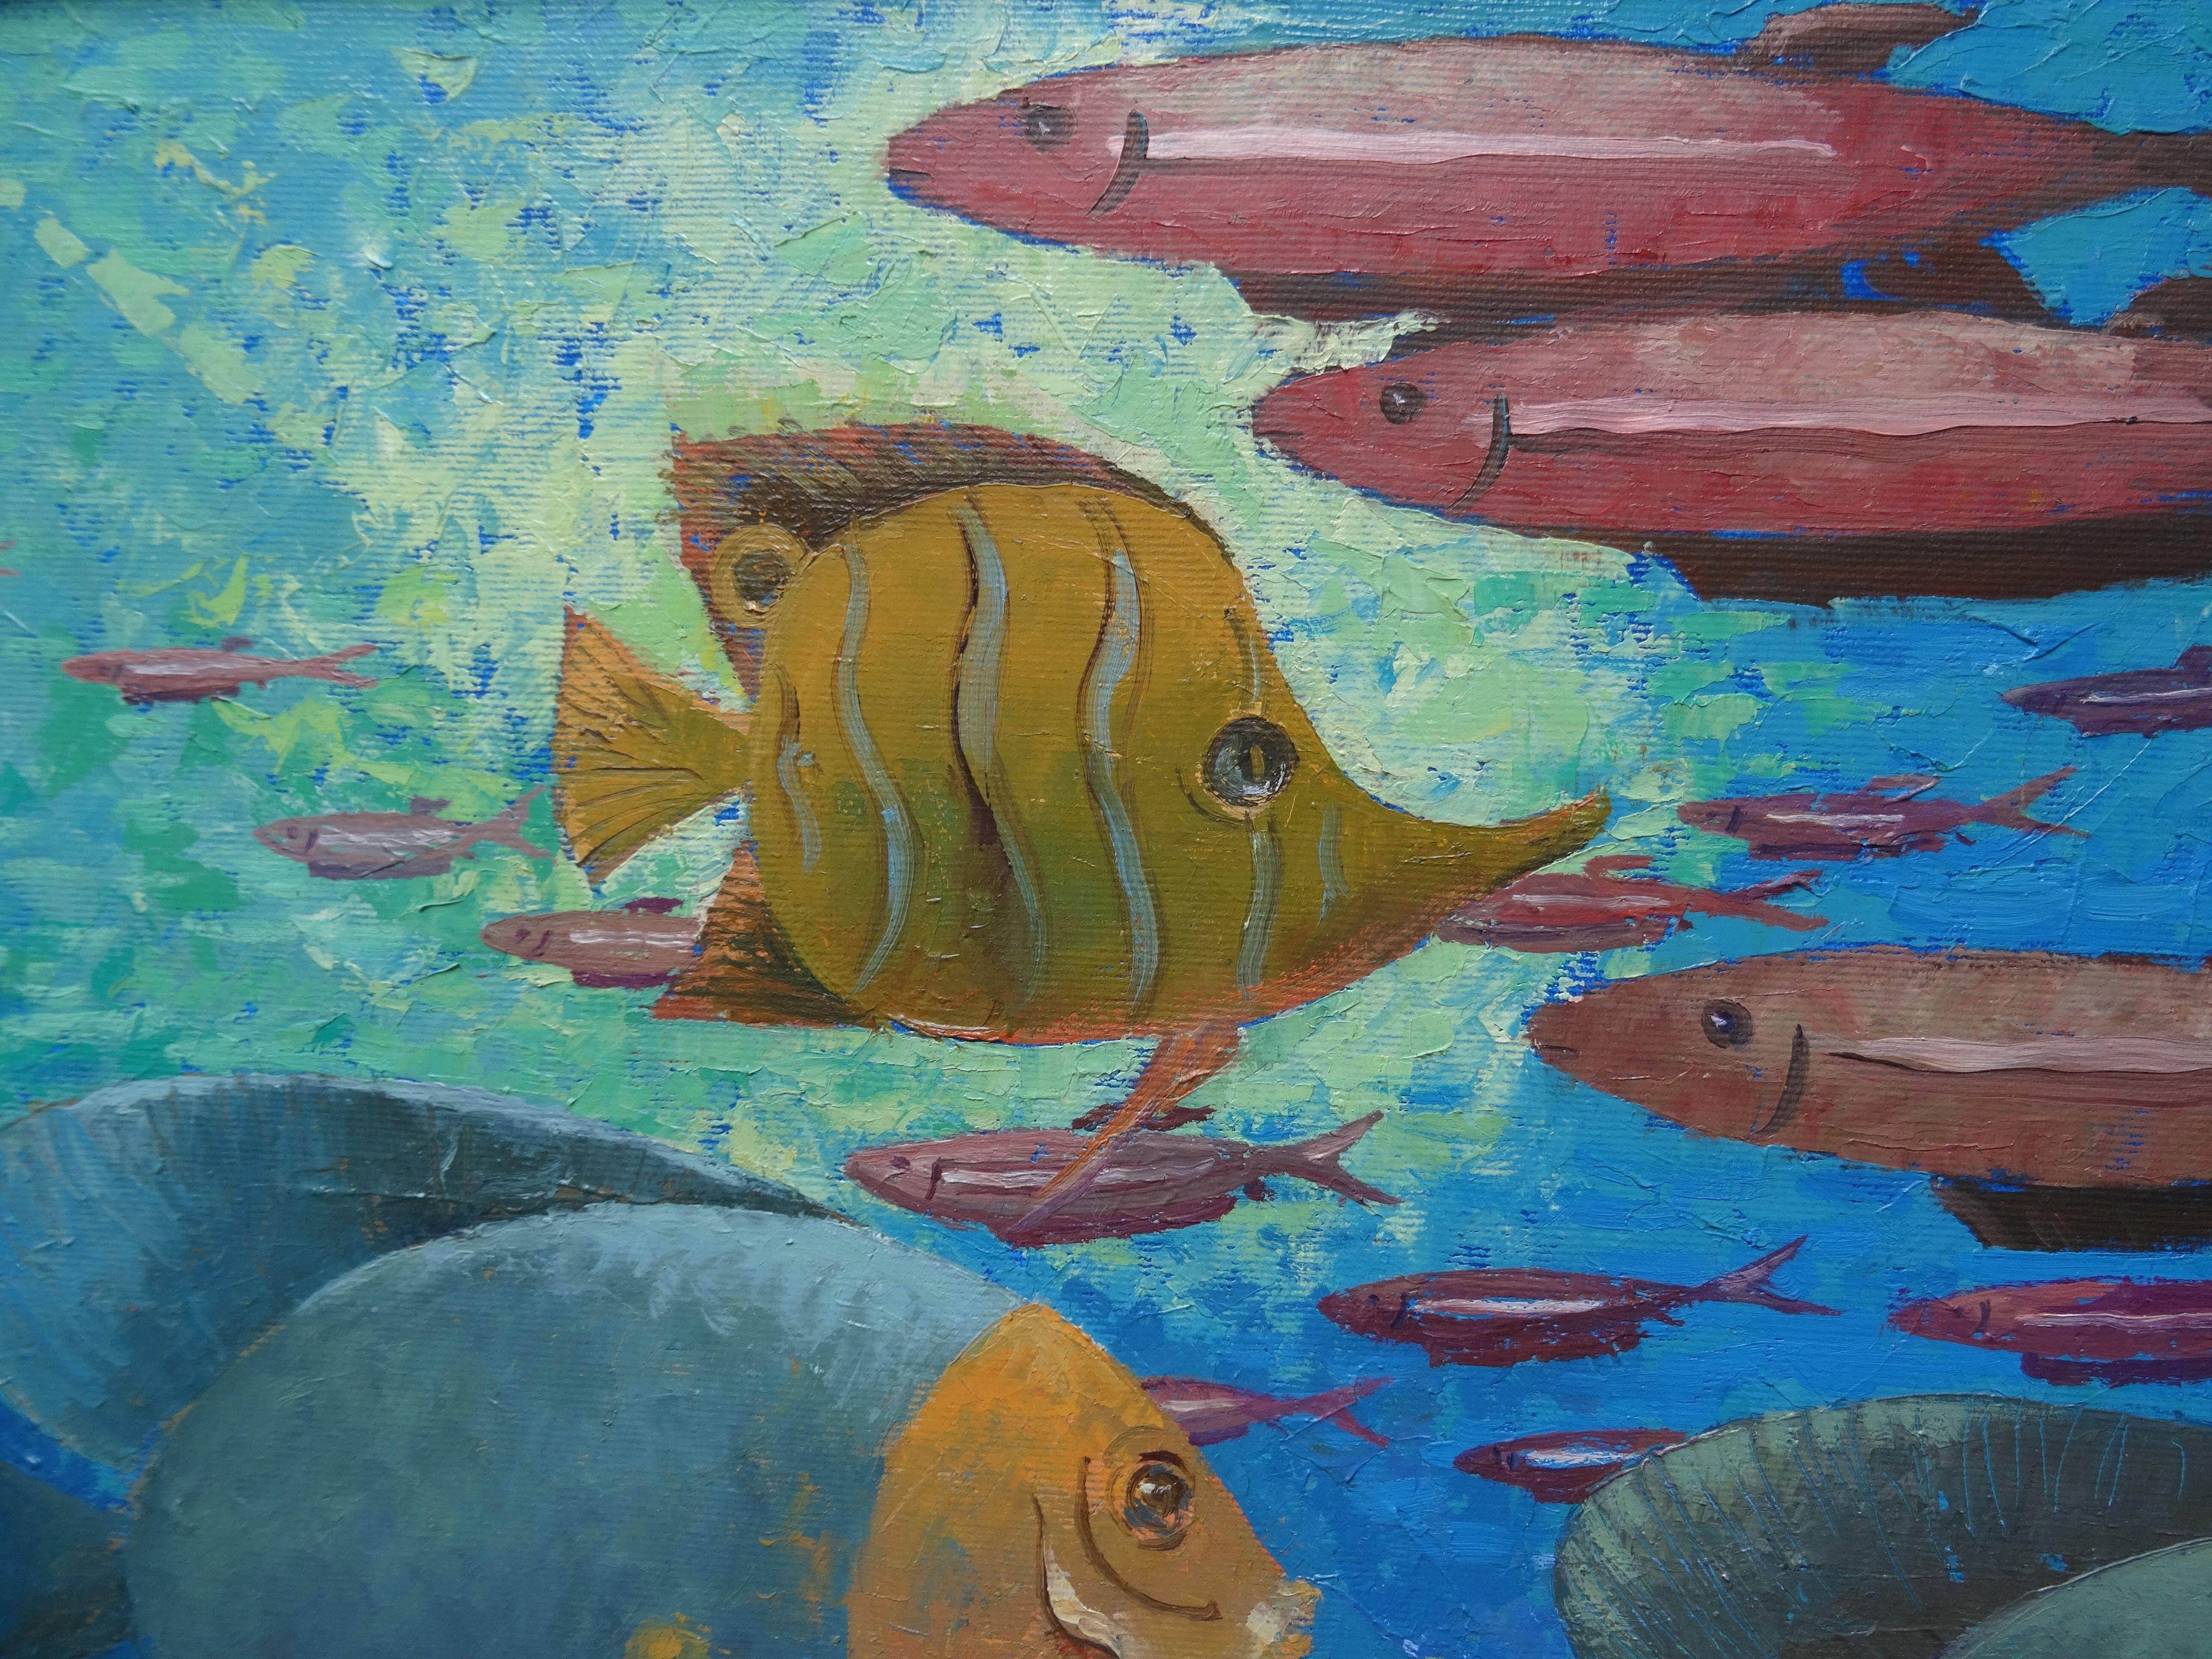 Peinture avec des poissons, monde sous-marin
Nugzar Avtandilovich Kahiani est né  à Poti, en Géorgie, en 1952. Il a étudié à l'école des beaux-arts qui porte le nom de Nikoladze. Puis il  est allé servir dans l'armée soviétique de 1970 à 1972. Après